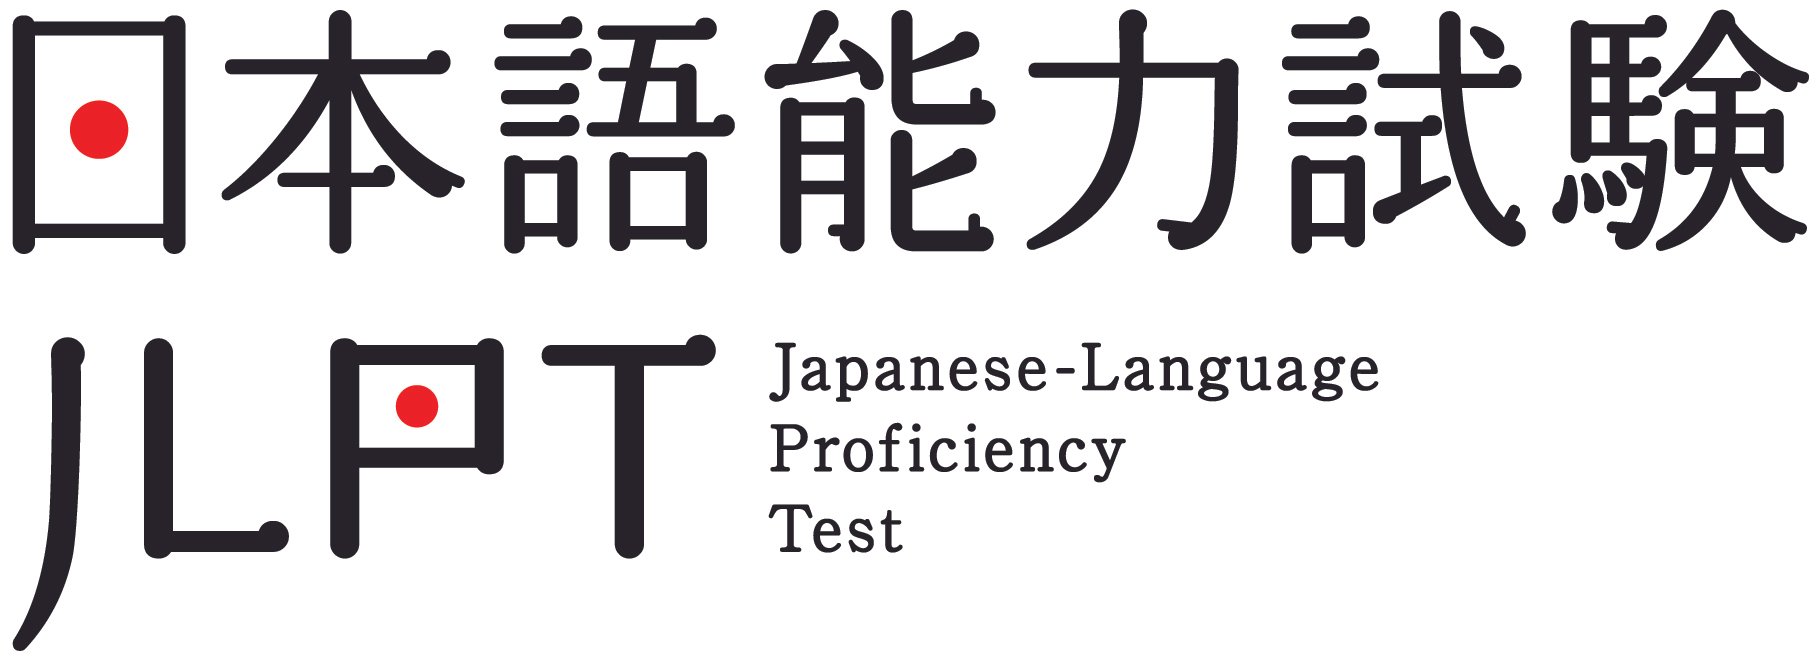 Экзамен по японскому языку